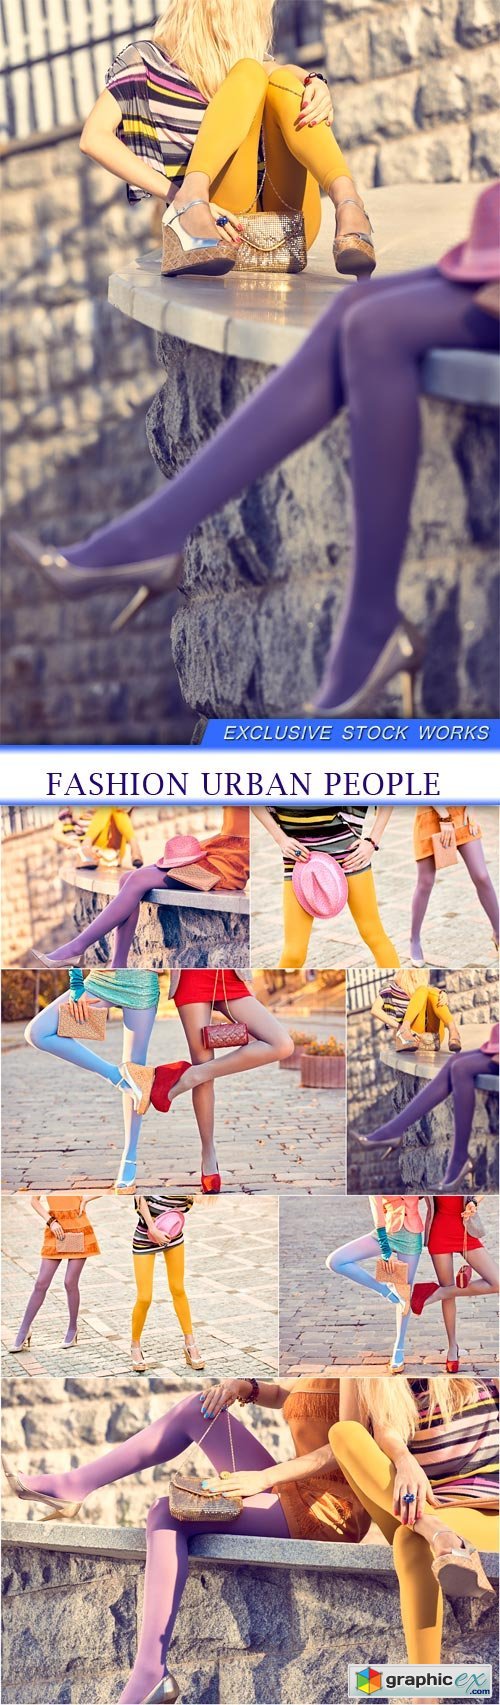 Fashion urban people 7X JPEG